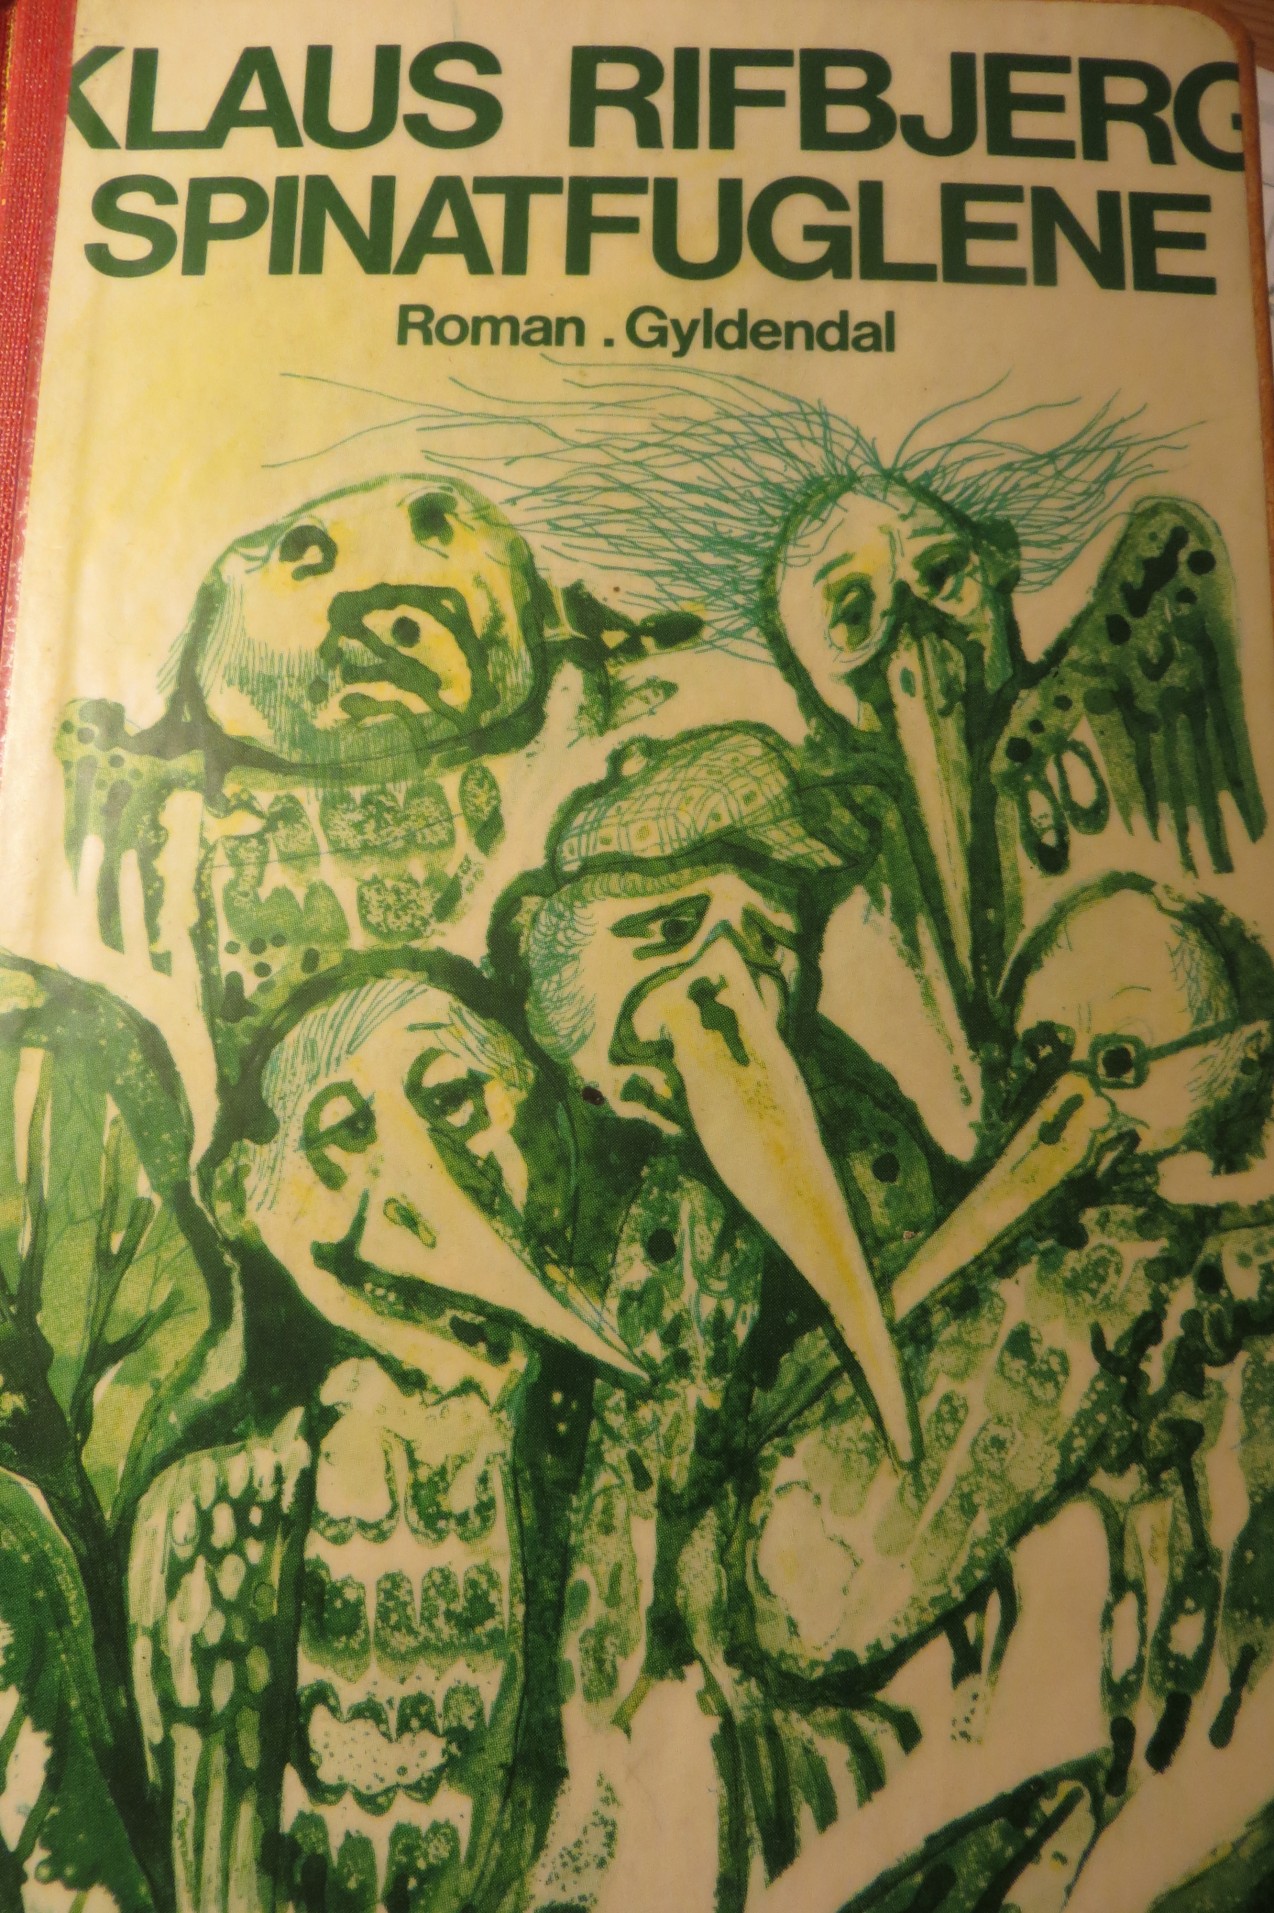 Omslaget af Klaus Rifbjergs roman Spinatfuglene